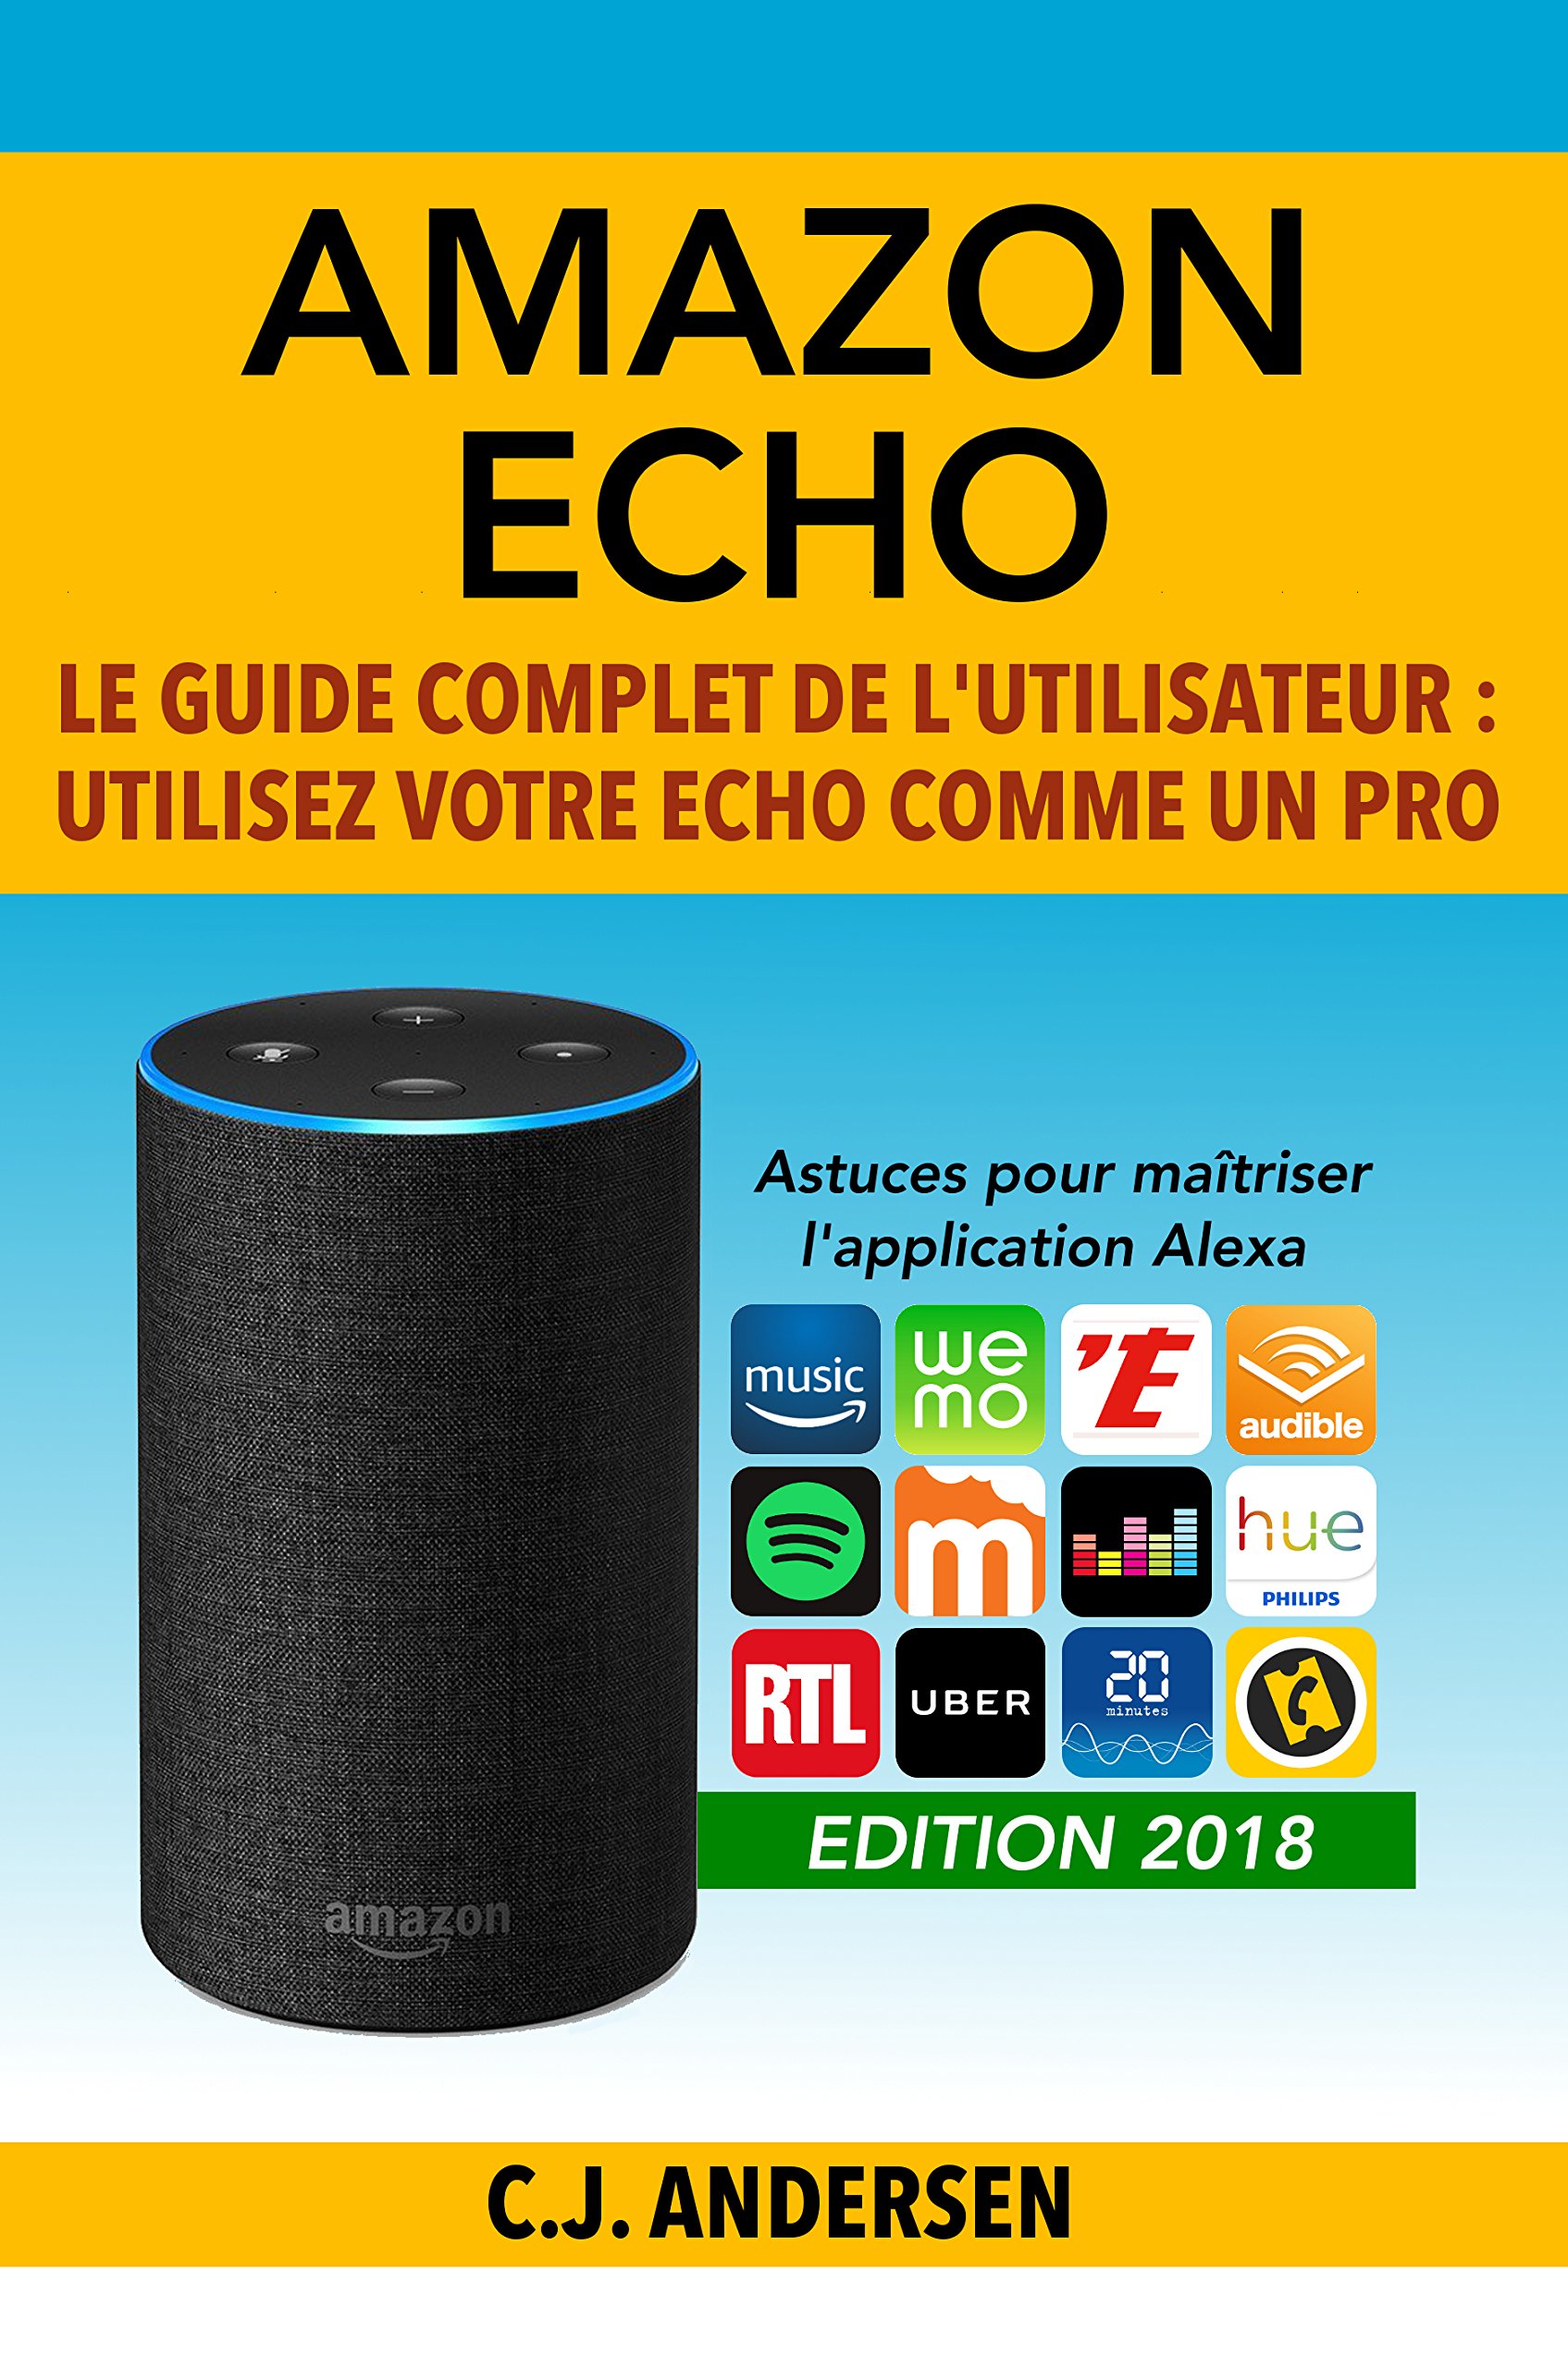 Amazon Echo - Le guide complet de l'utilisateur: Utilisez votre Echo comme un pro - Astuces pour maîtriser l’application Alexa (Démarrez Alexa et Amazon Echo, conseils et astuces) (French Edition)